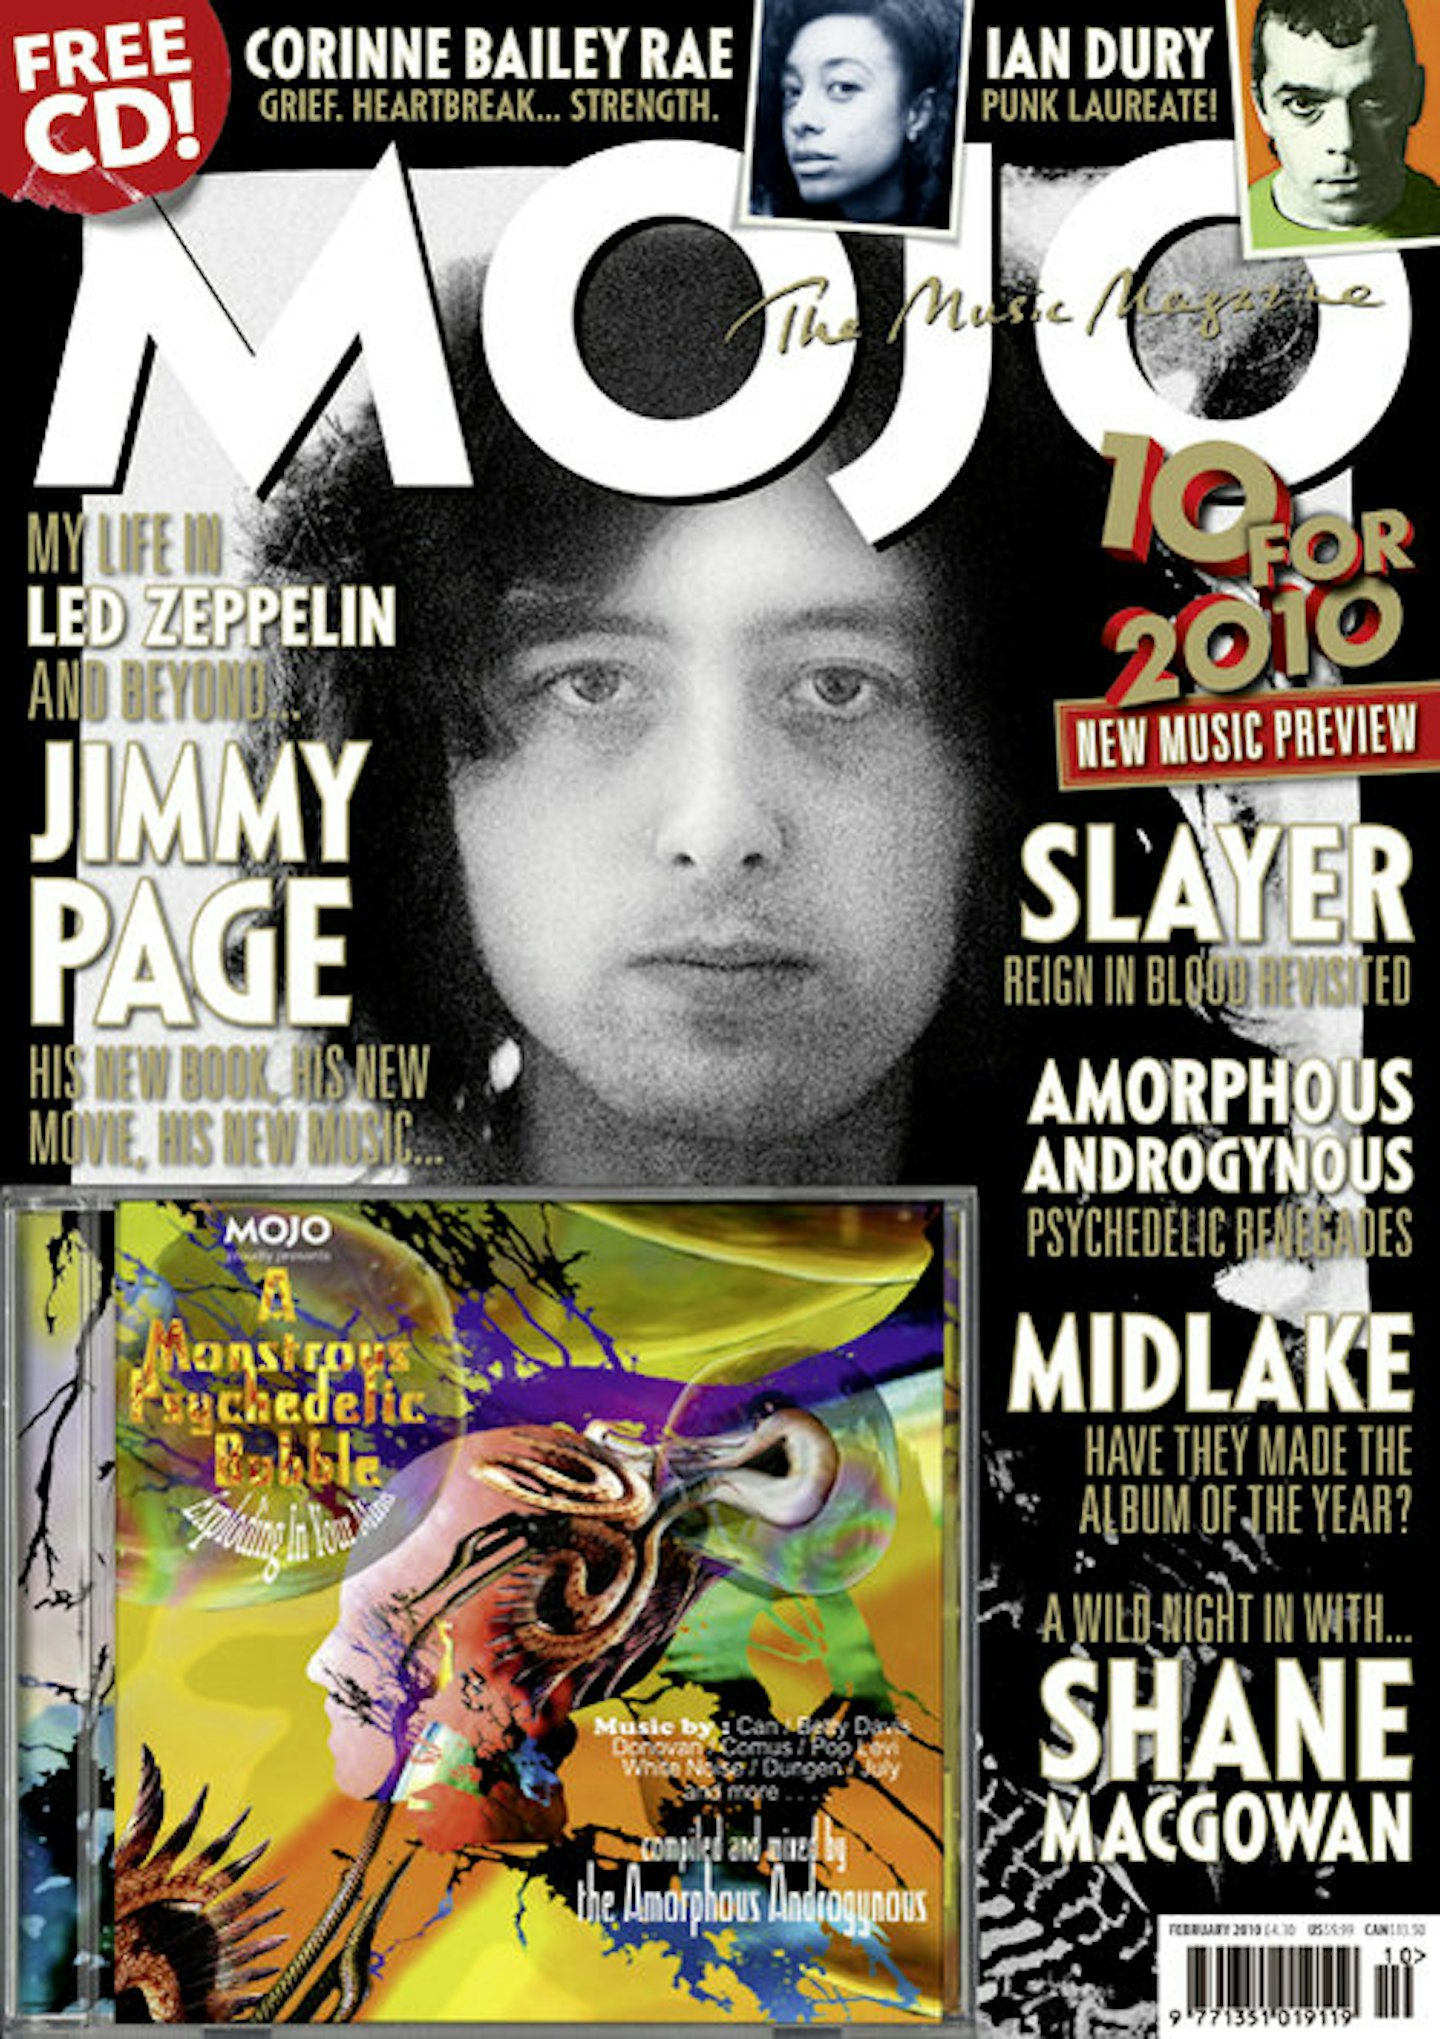 MOJO Issue 195 / February 2010